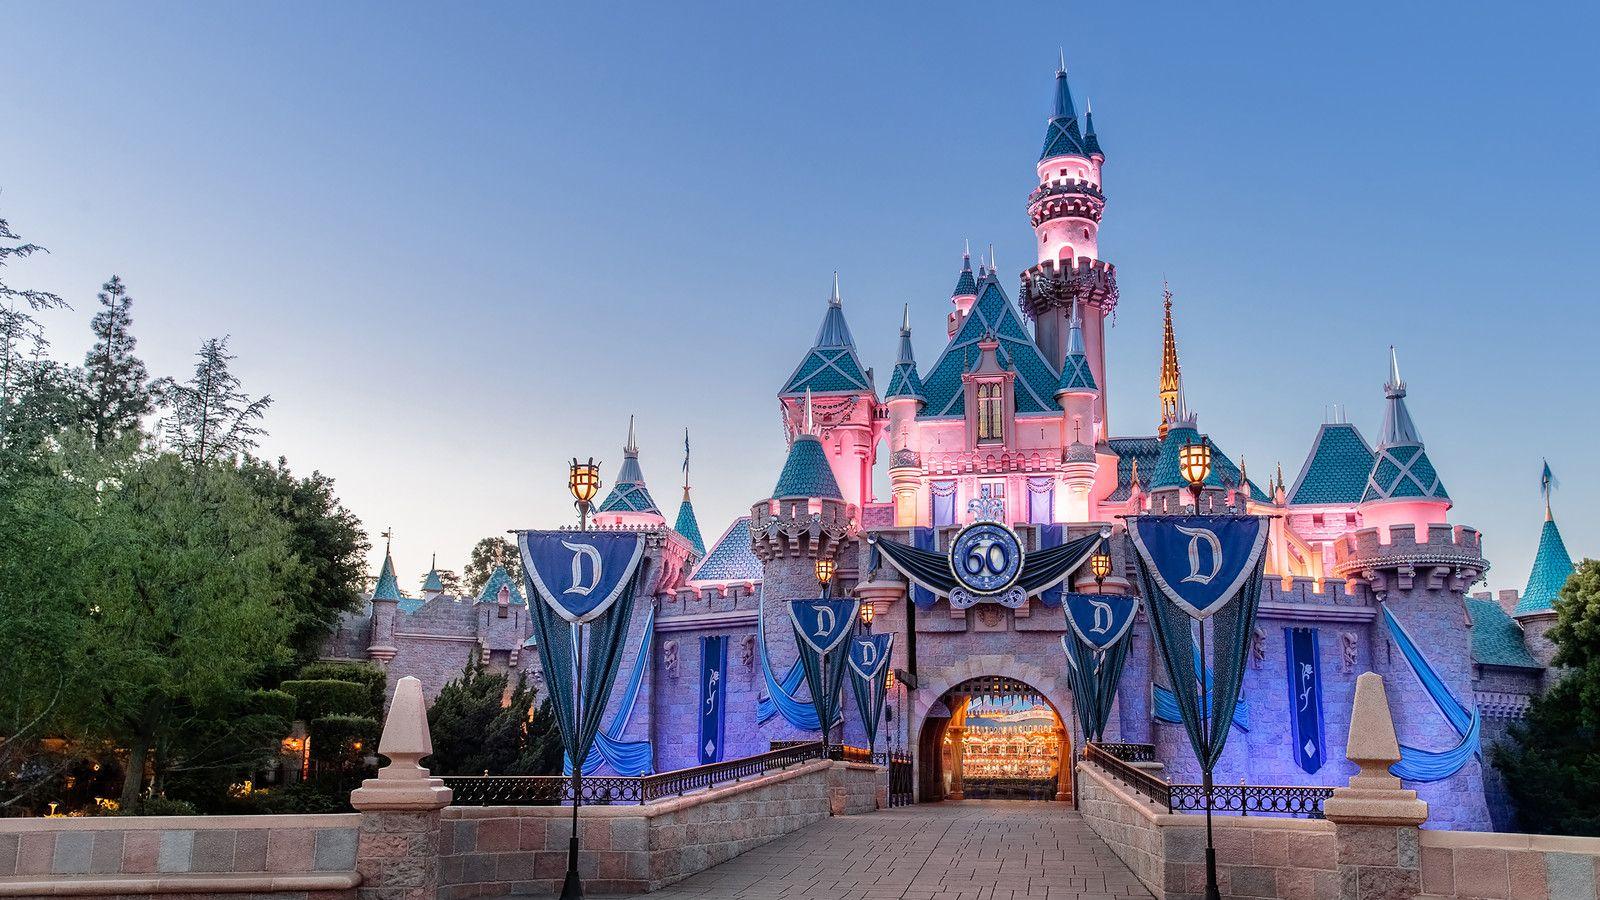 Disneyland HD Wallpapers - Top Free Disneyland HD ...